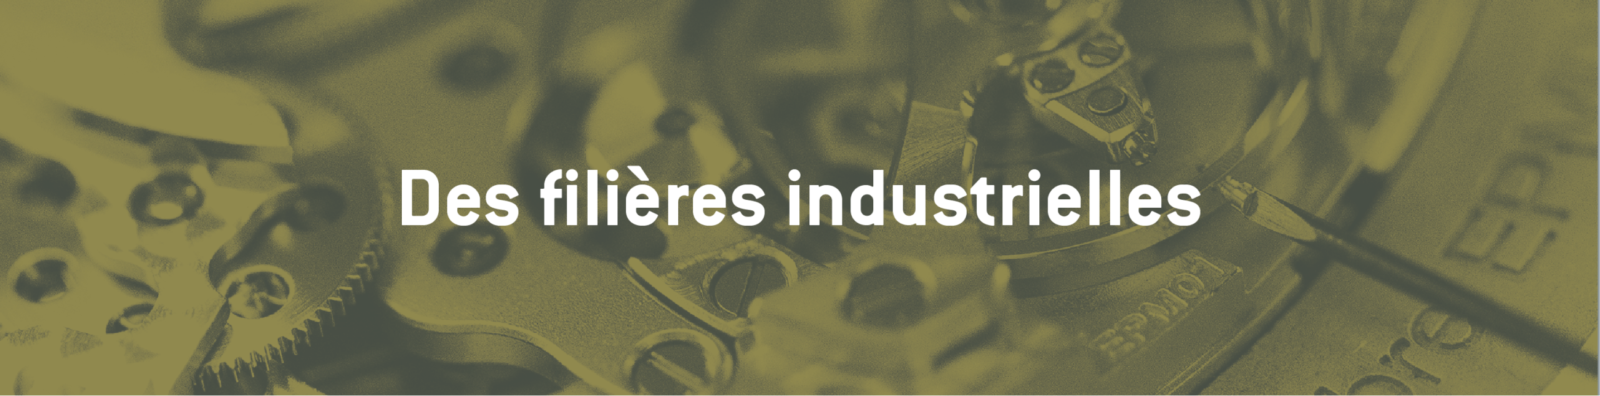 Des filières industrielles en Bourgogne-Franche-Comté